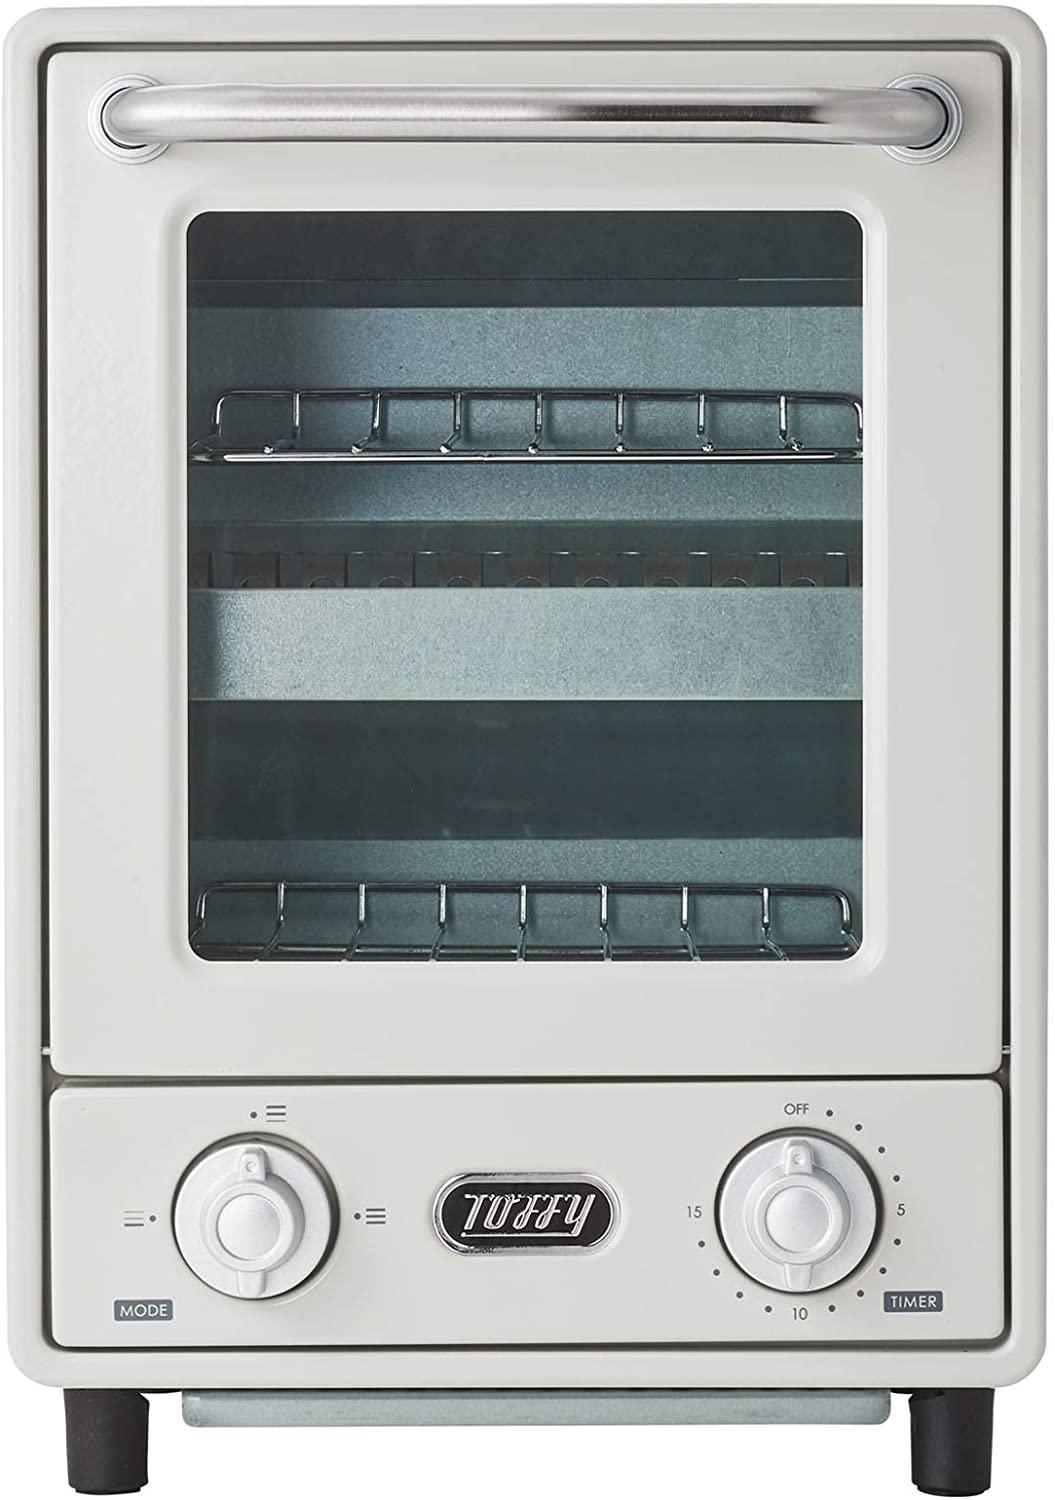  【Toffy/トフィー】 オーブントースター K-TS4(アッシュホワイト) 縦型トースター 2段トースター 新型 スリム レトロ K-TS4-AW